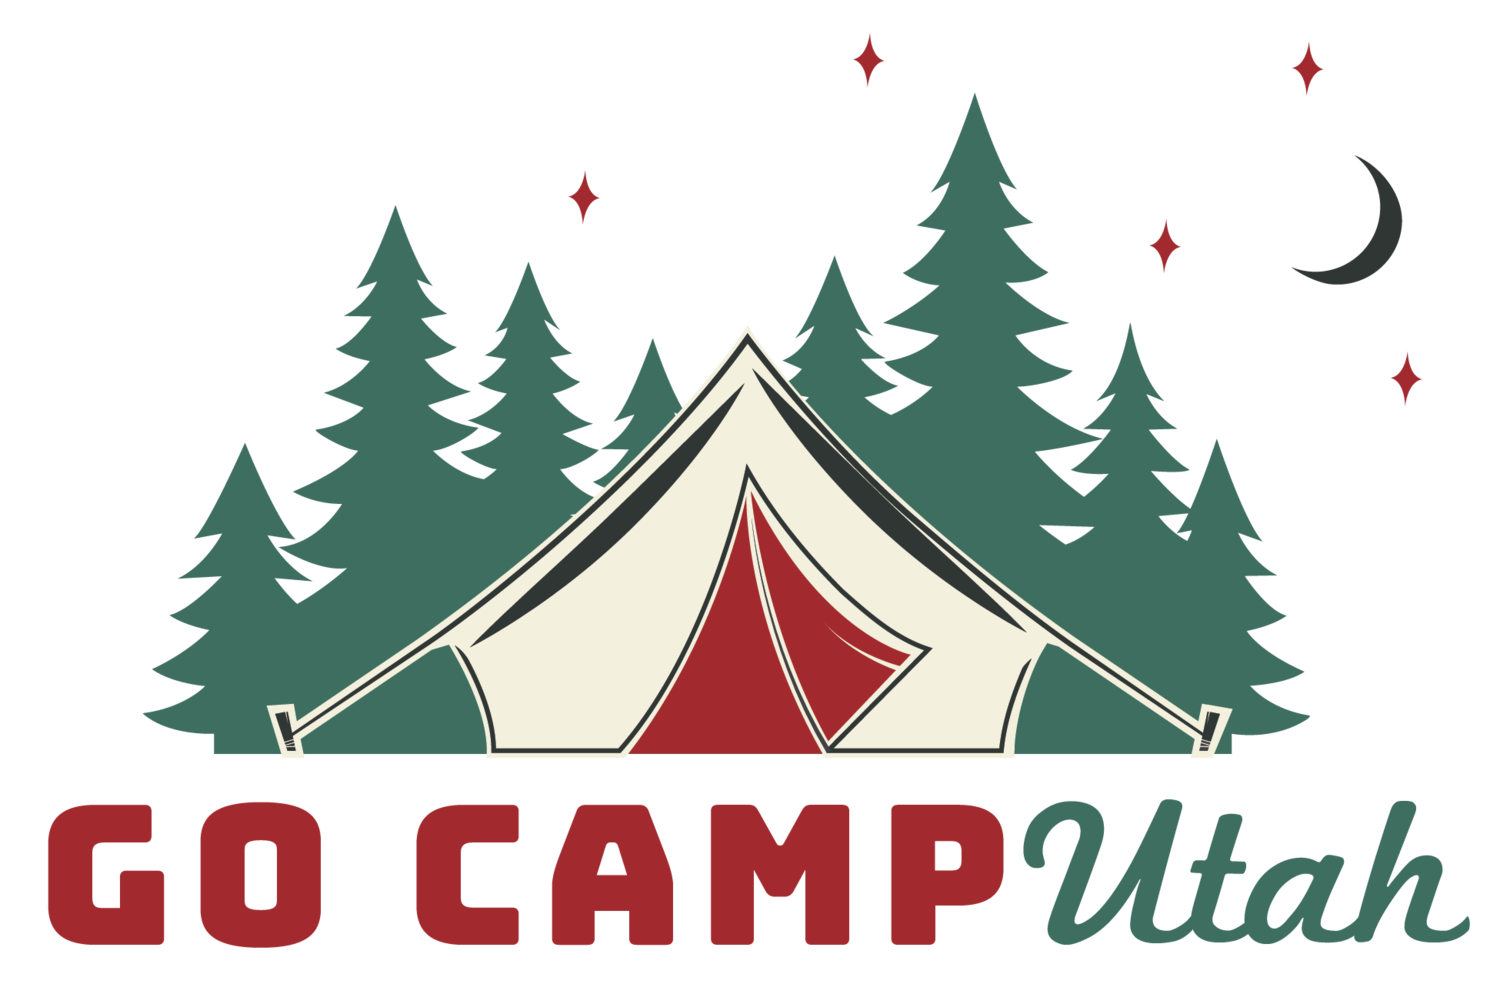 Go Camp Utah